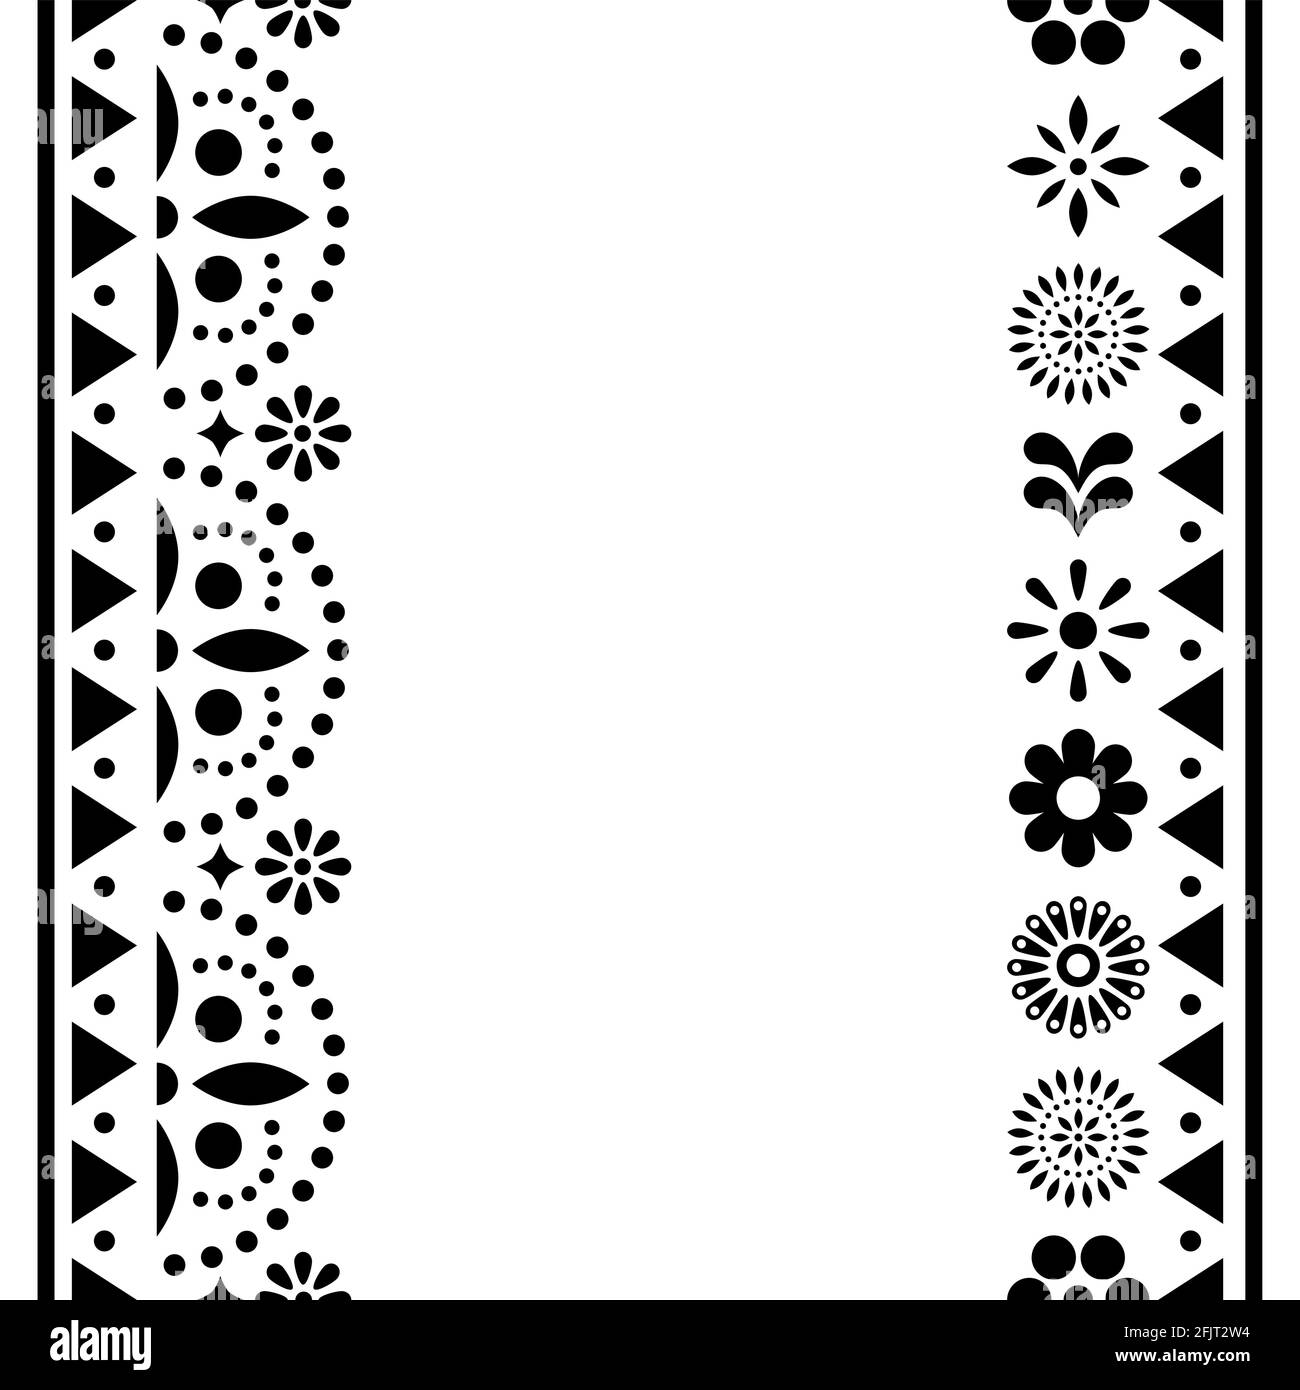 Mexikanische glücklich Vektor Grußkarte oder Einladung Design, schwarz-weiß Muster mit Blumen und geometrischen Formen Stock Vektor